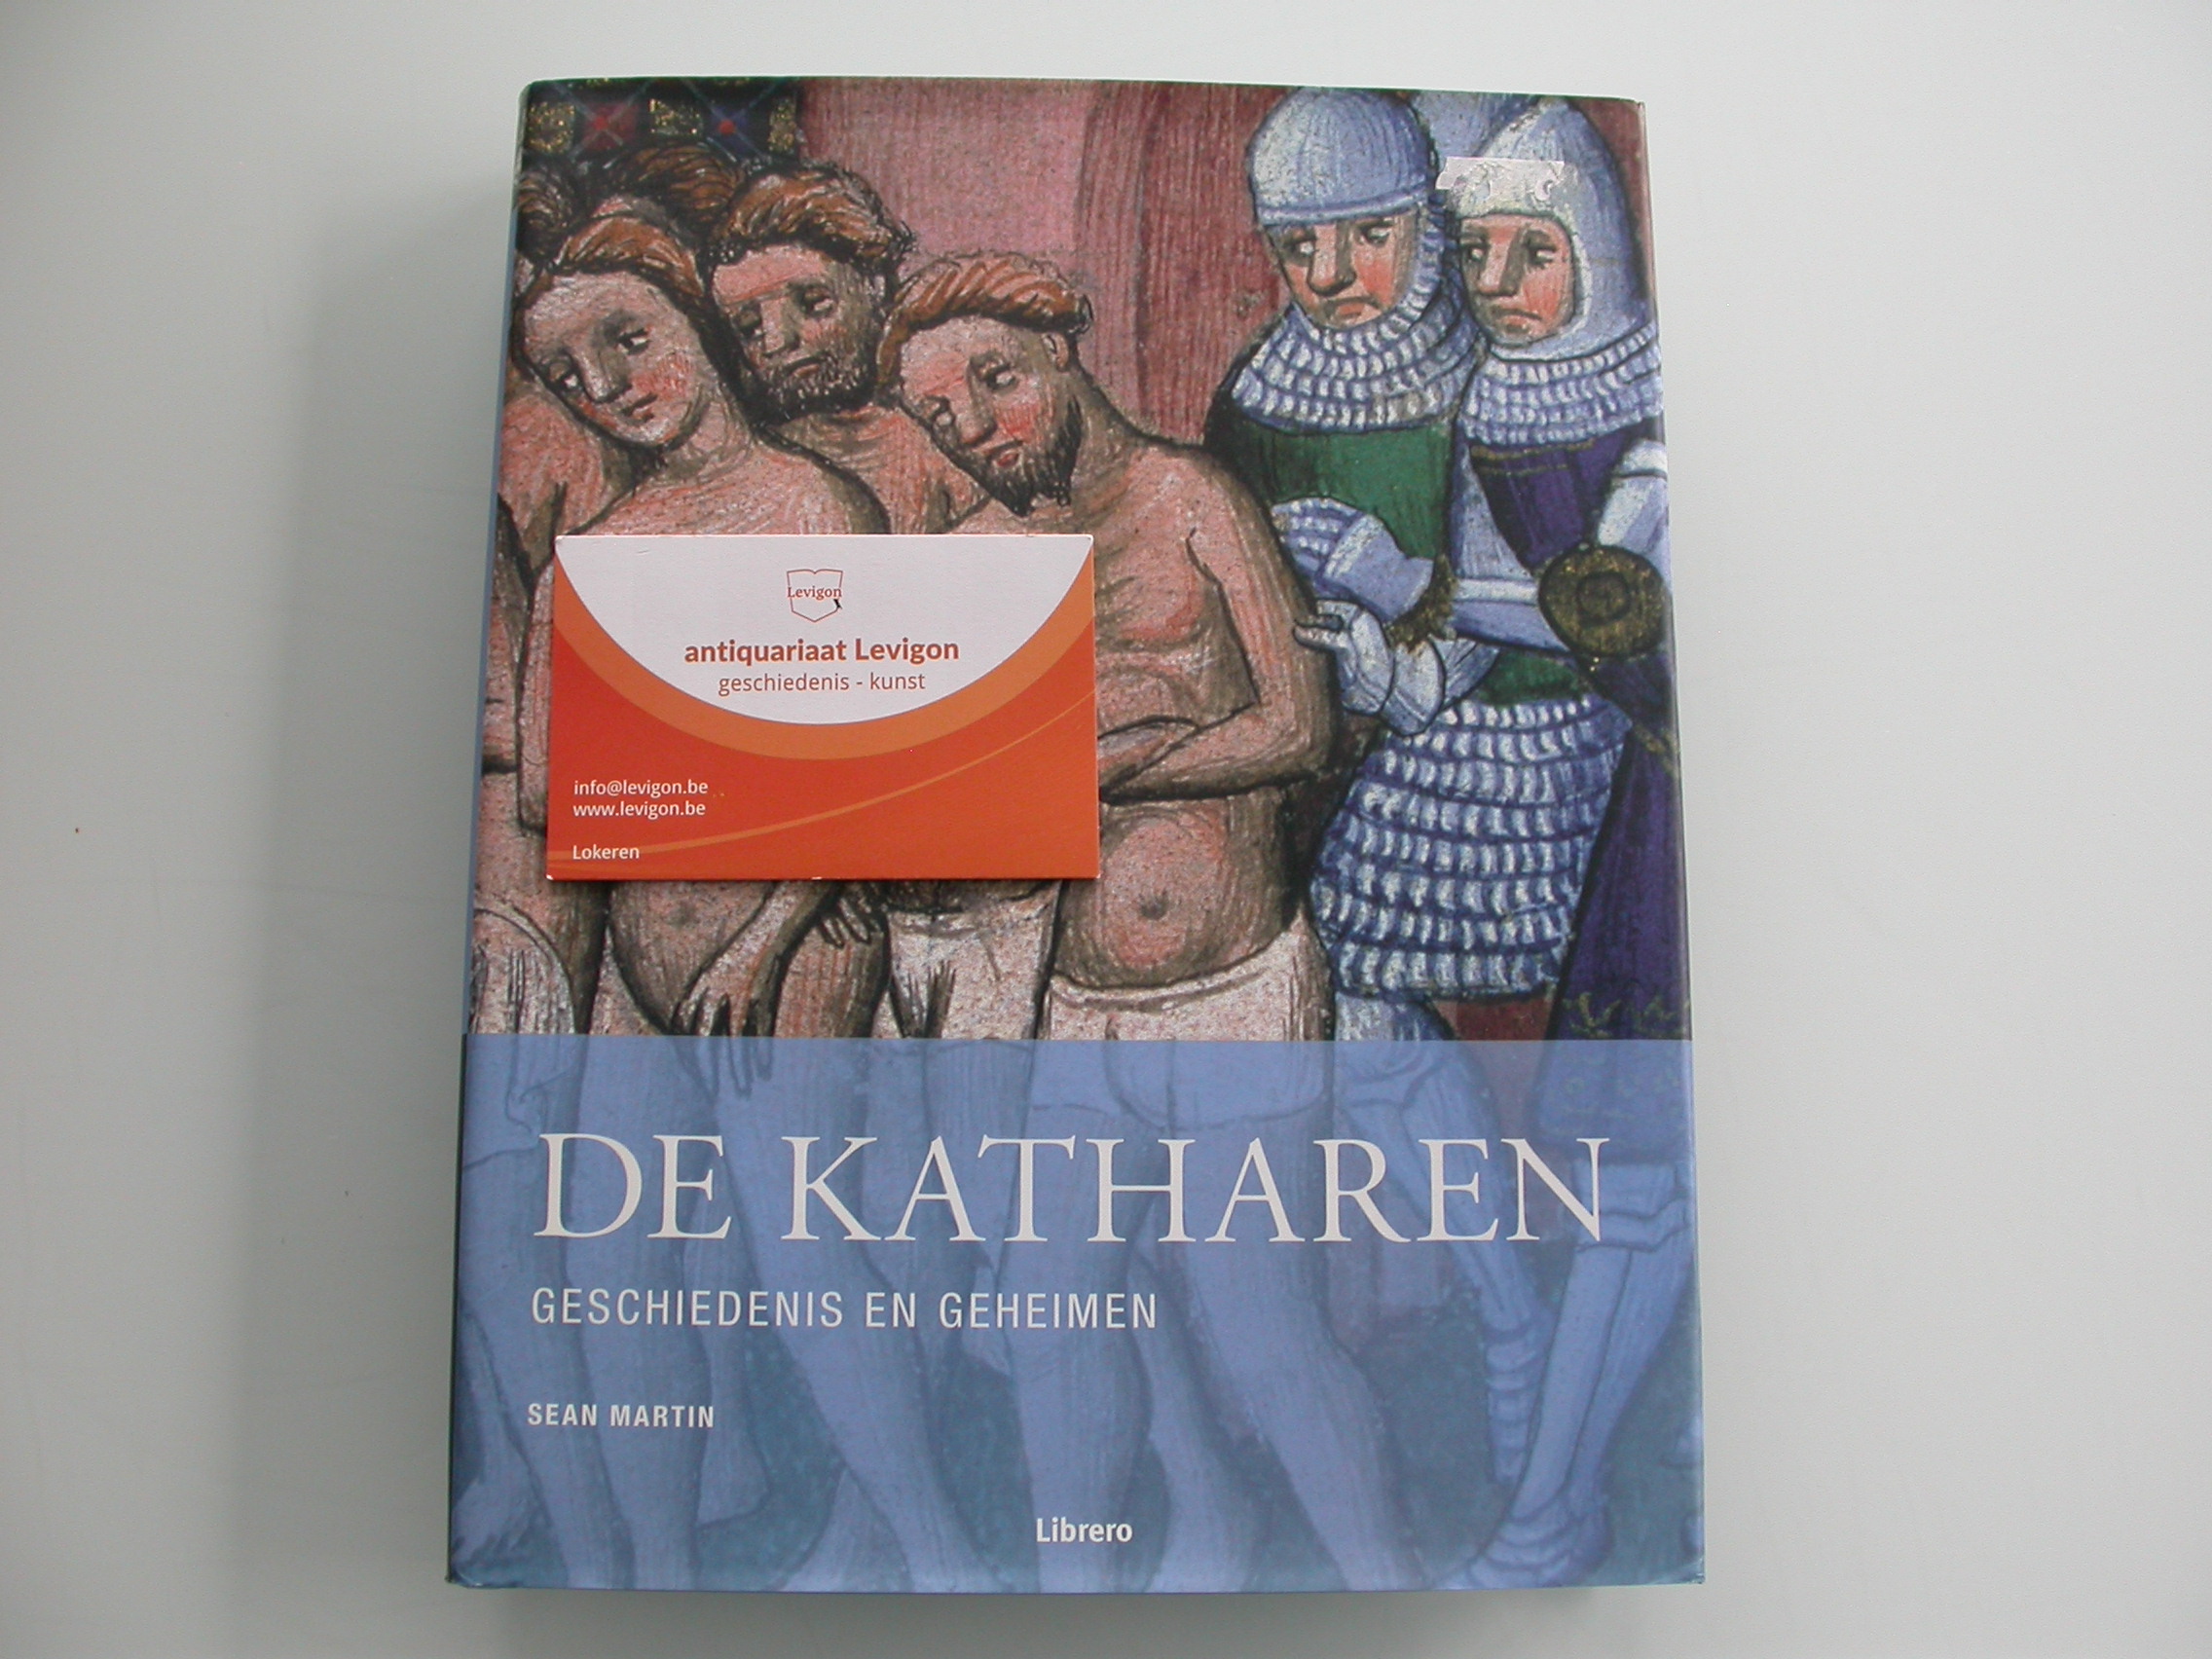 Martin De katharen Geschiedenis en geheimen